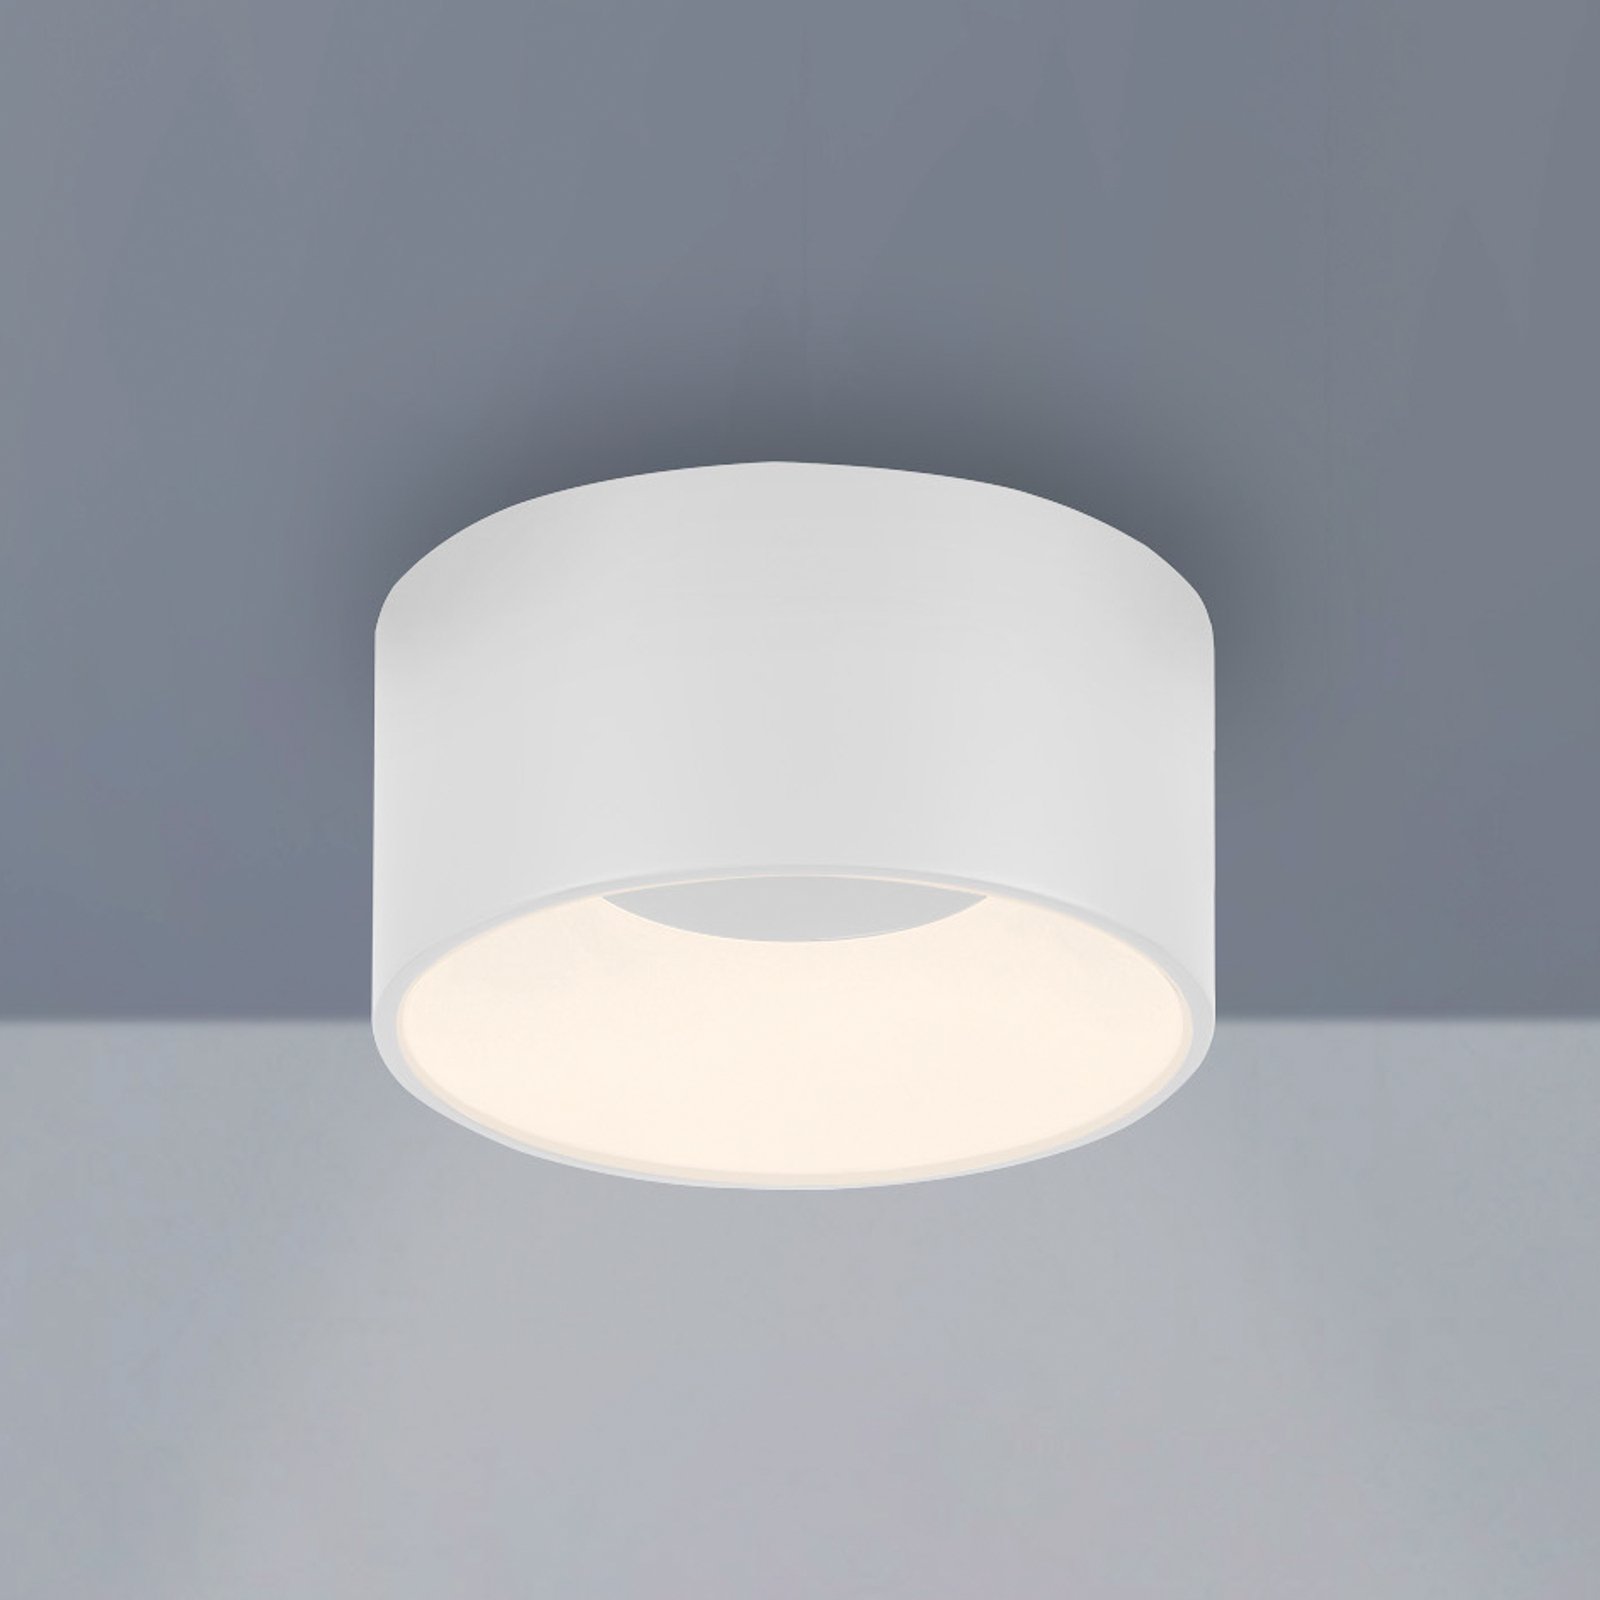 JUST LIGHT. Lampa sufitowa LED Tanika, biała, Ø 16 cm, ściemniana